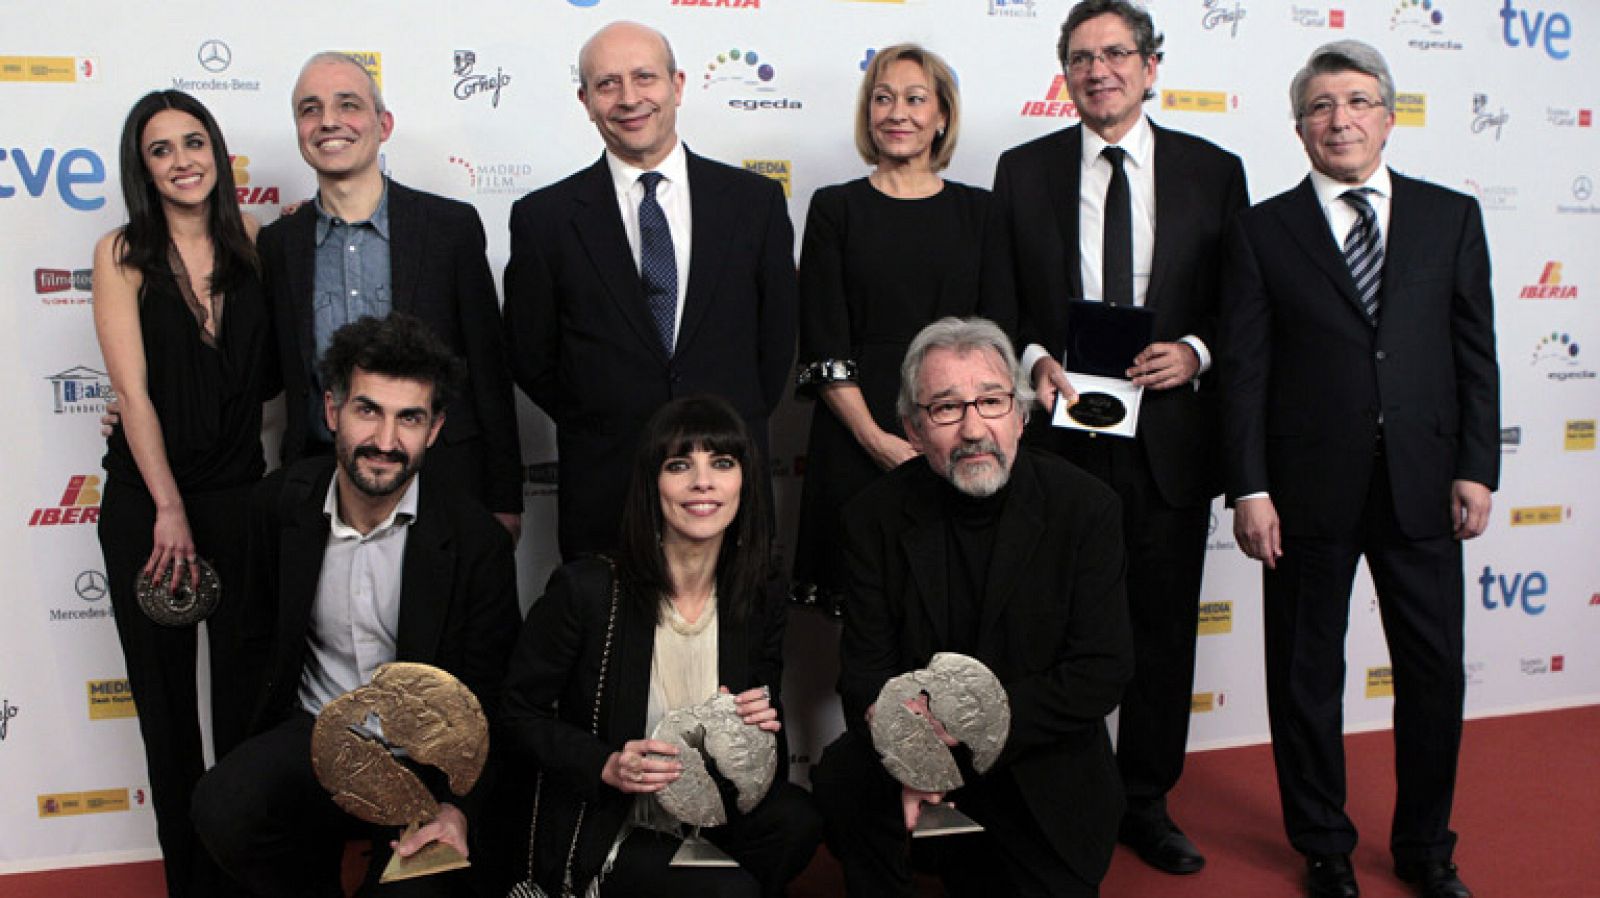 Premios José María Forqué 2013 - Ver ahora